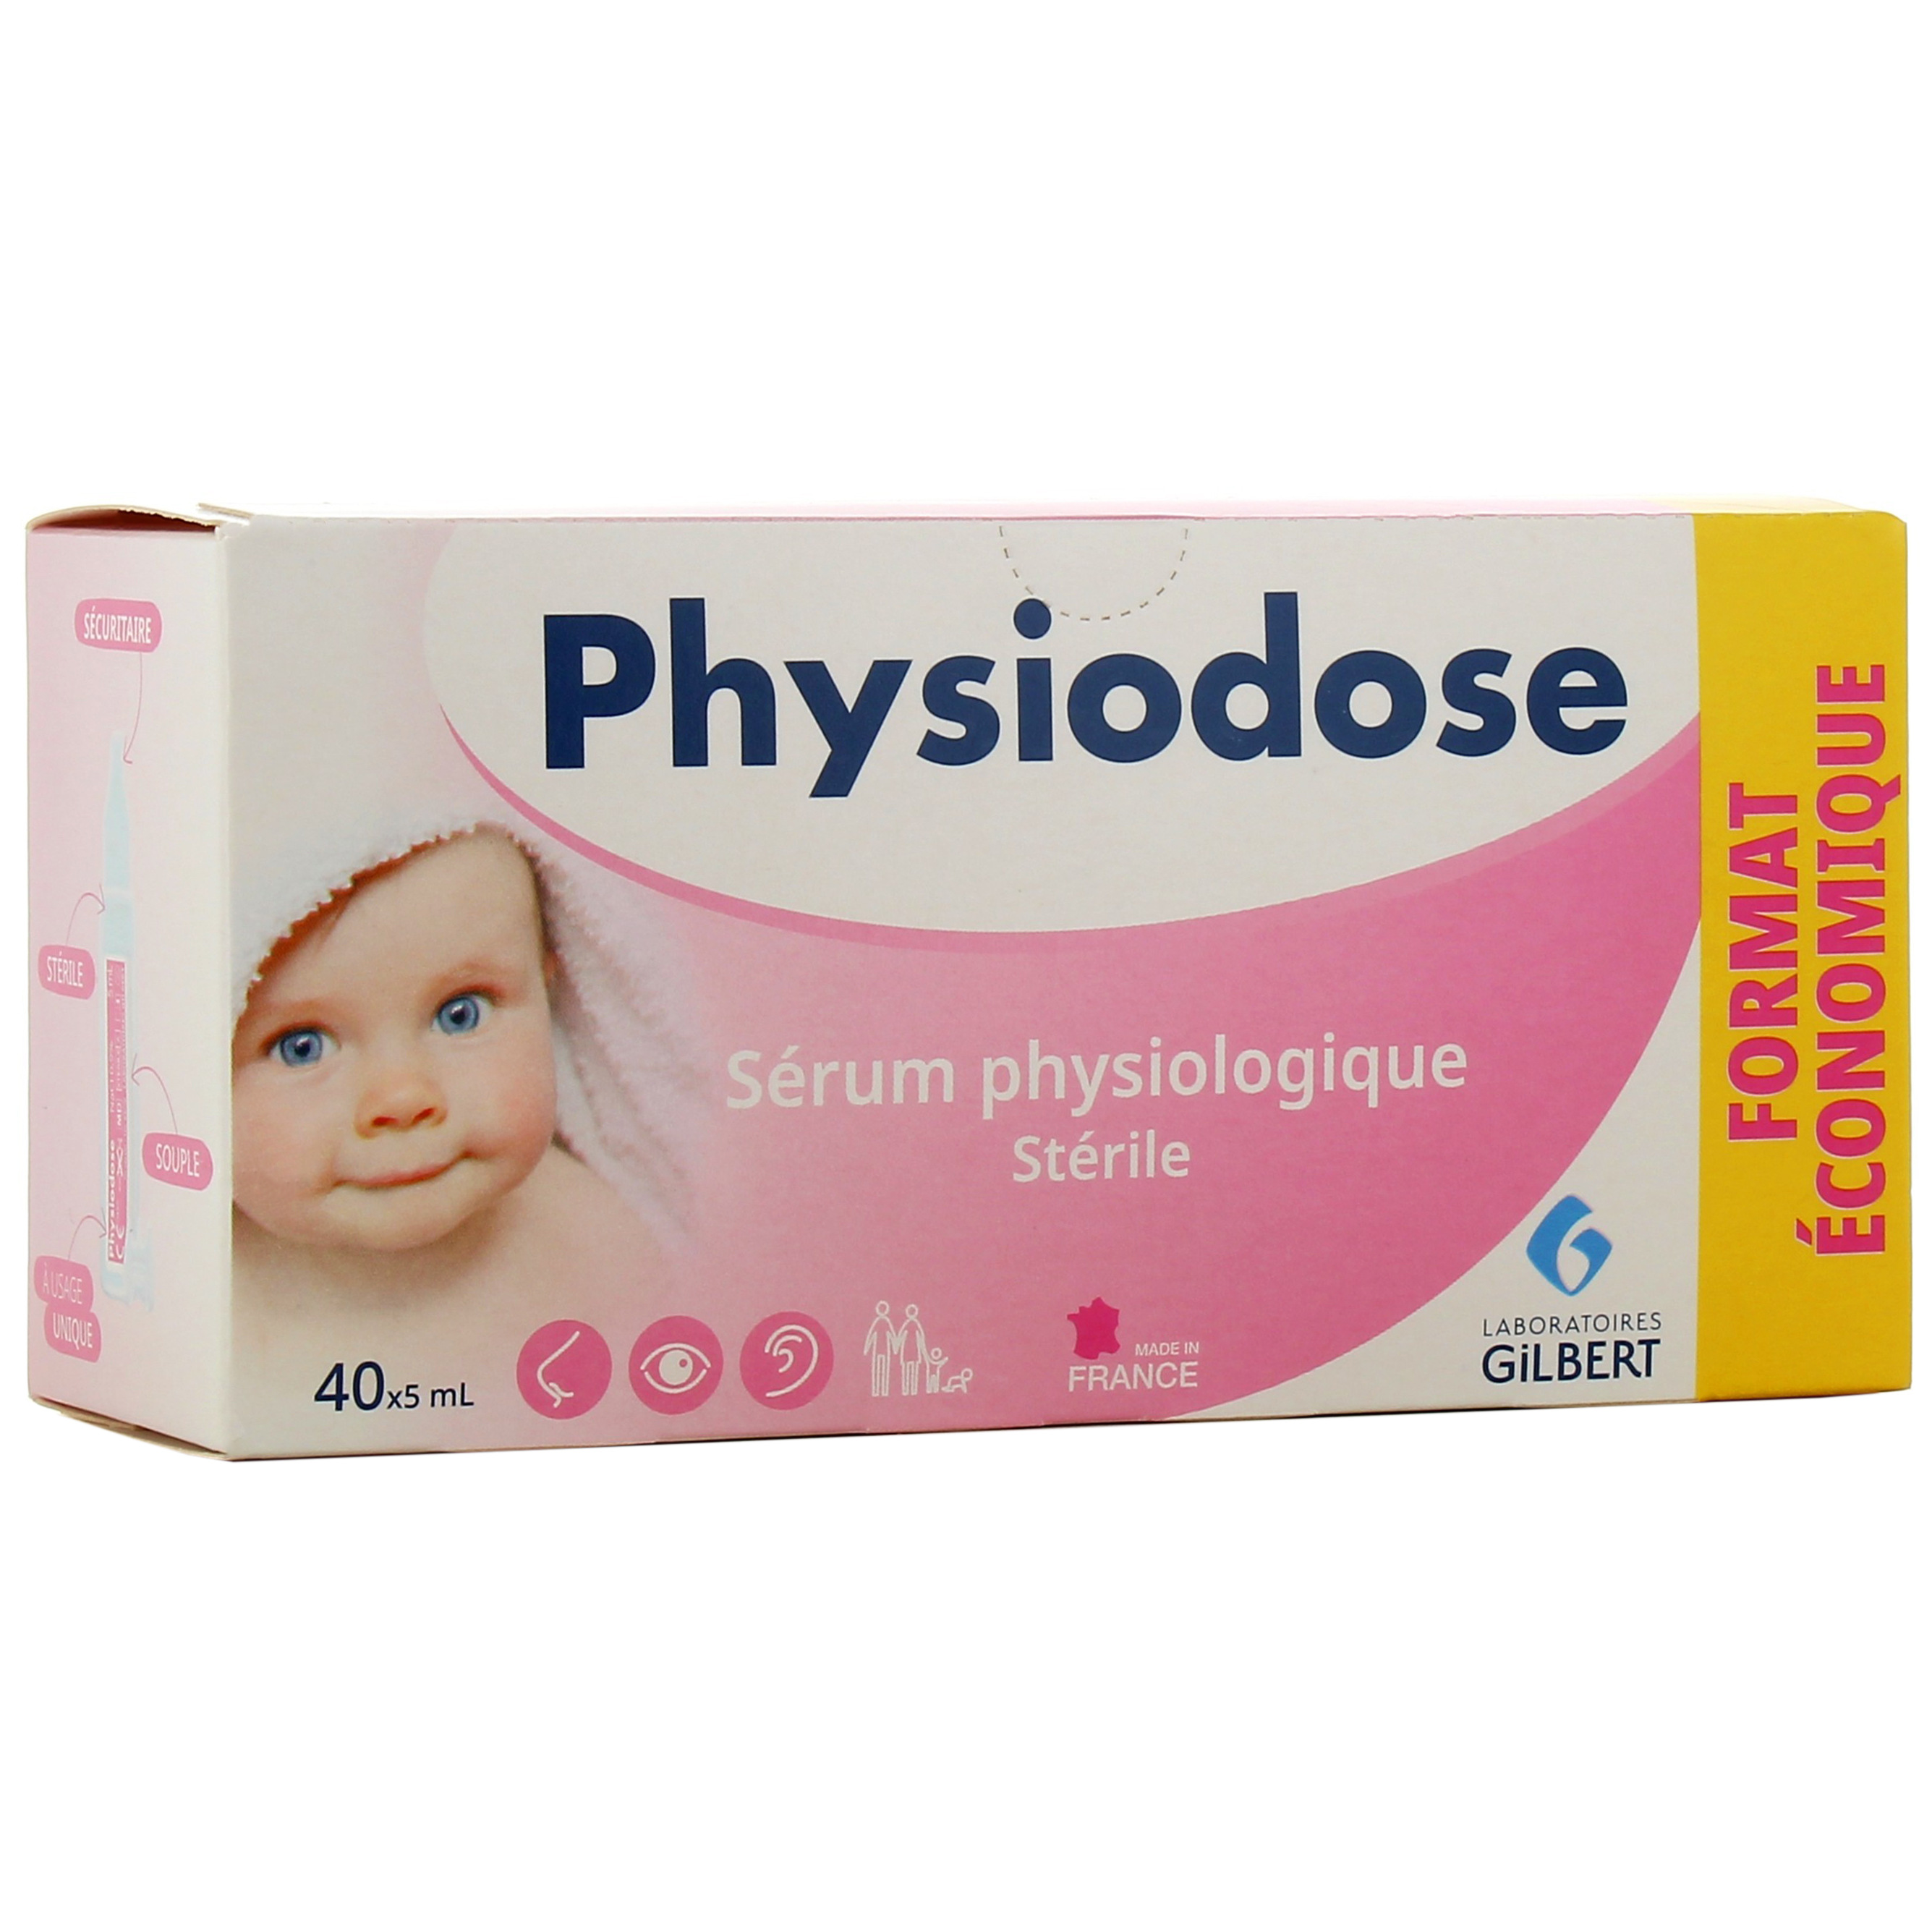 Physiodose sérum physiologique stérile 40 de 5ml